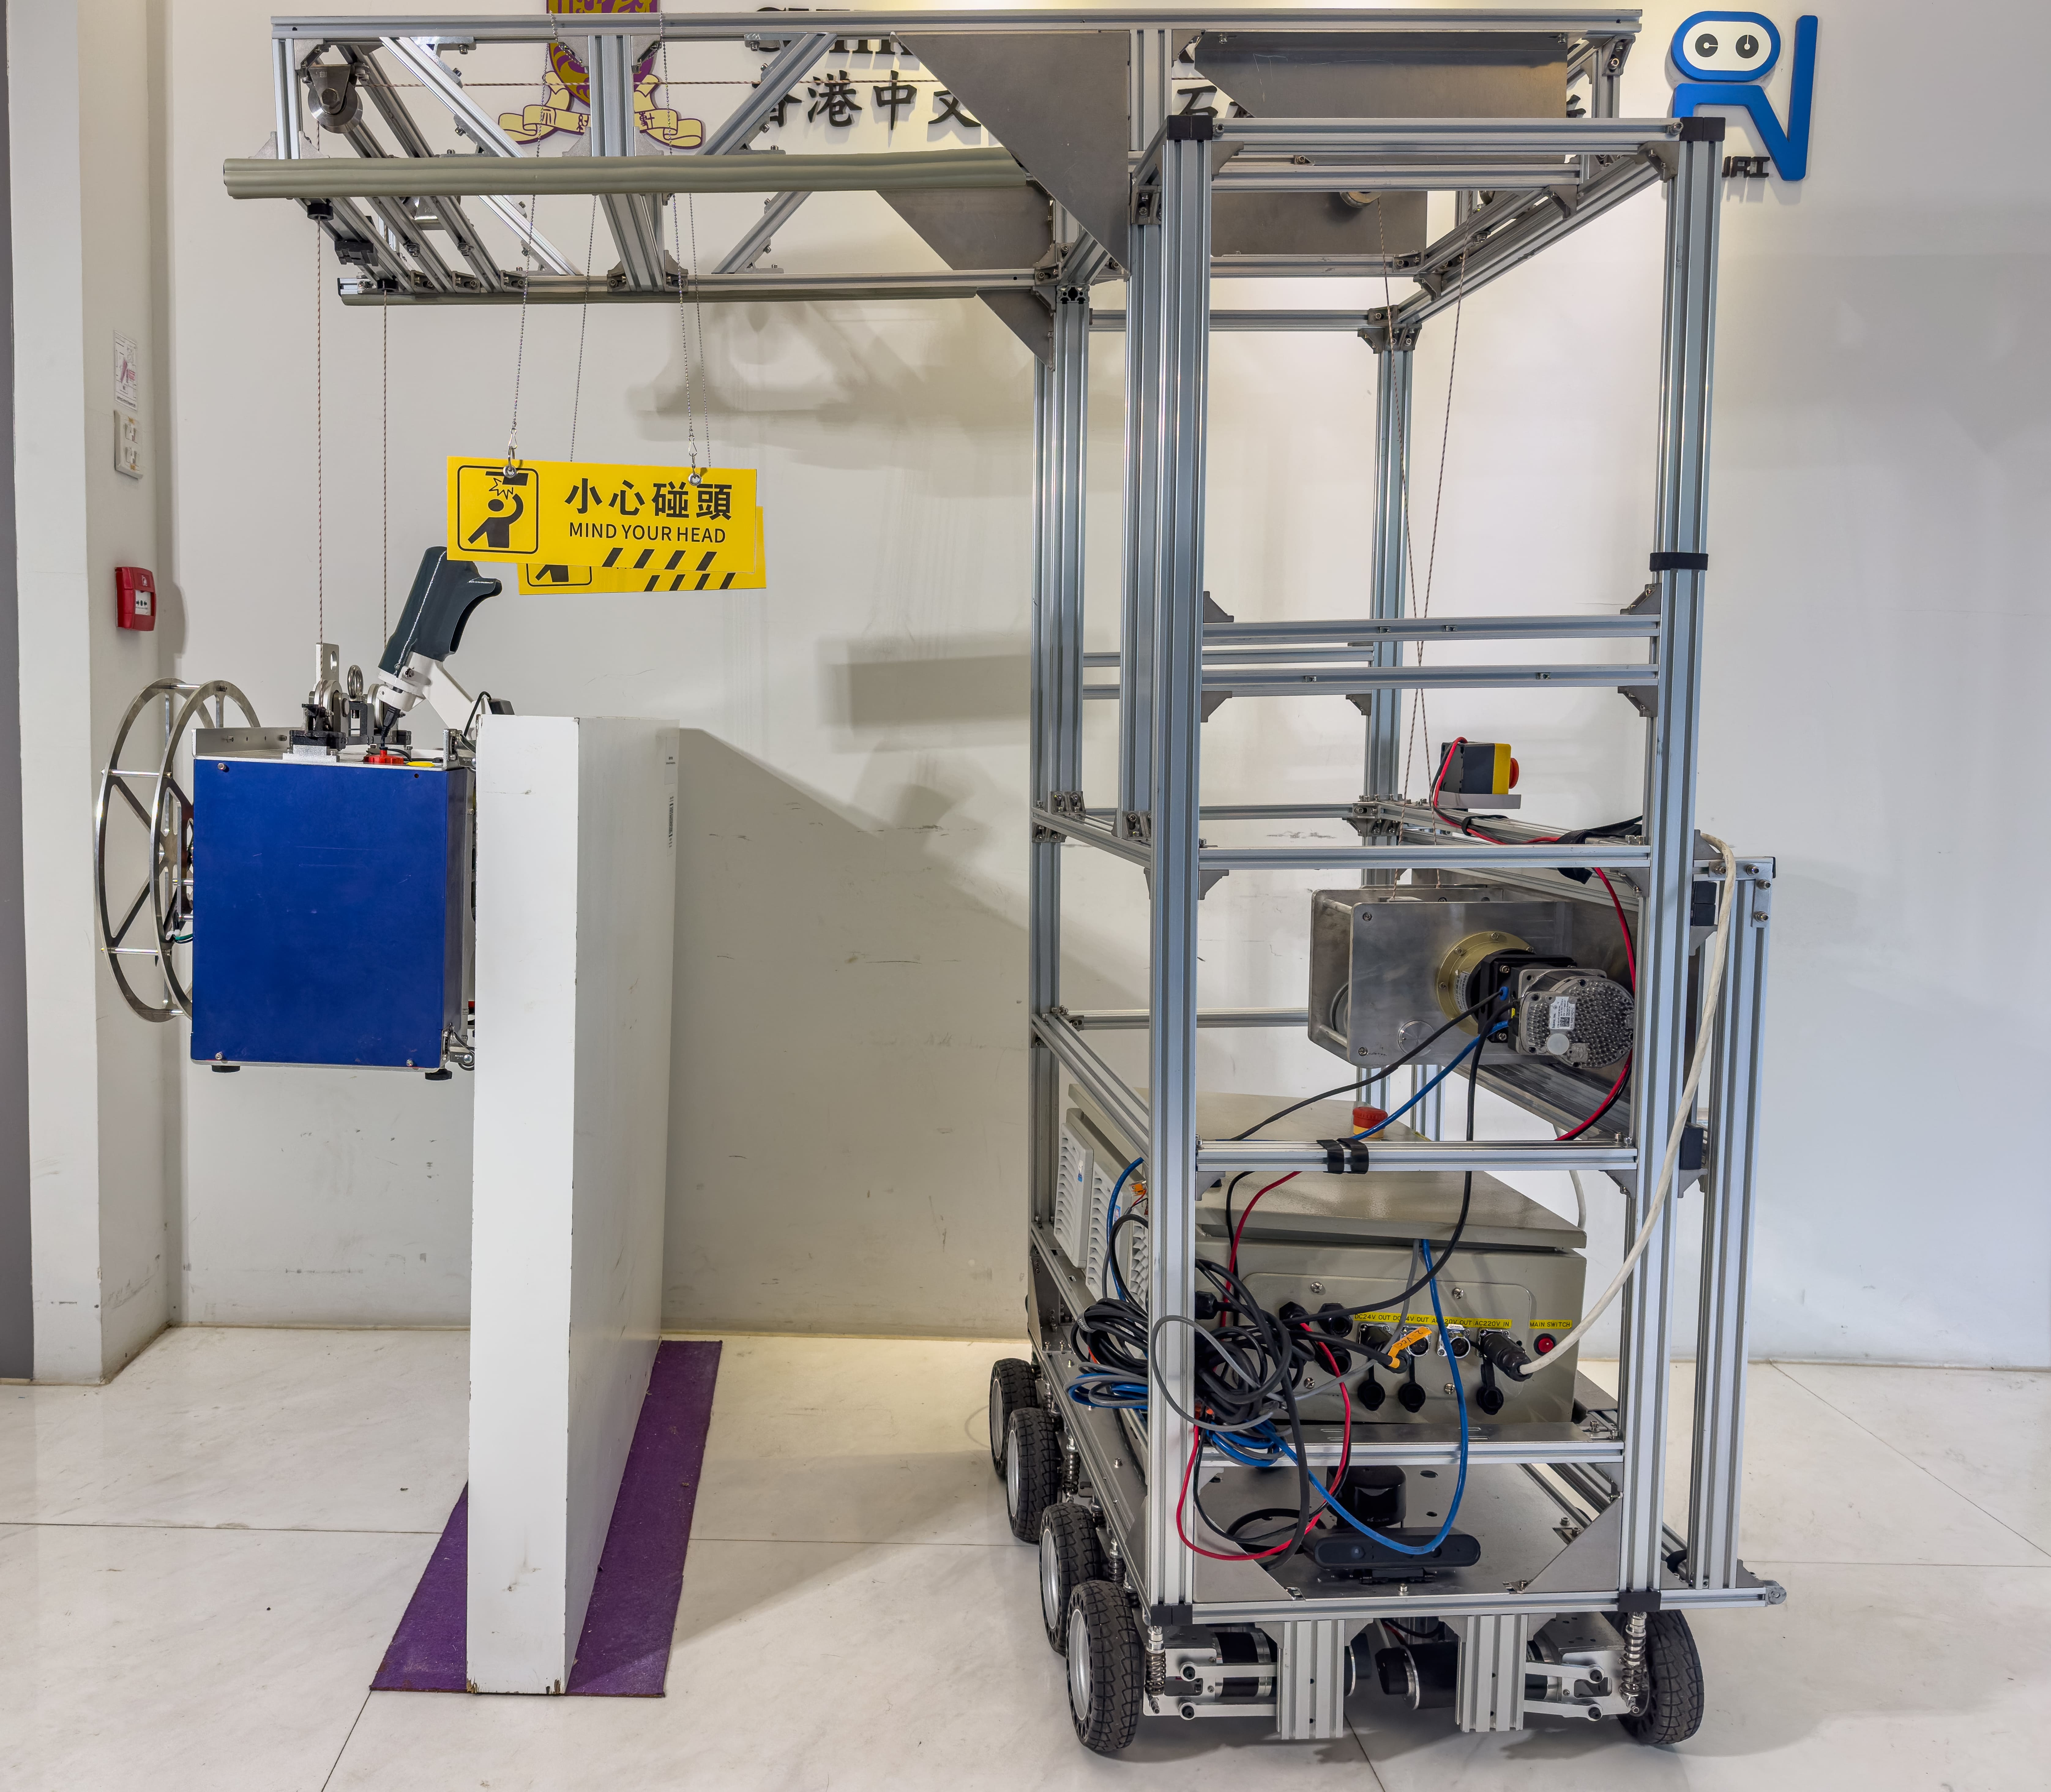 Robo Tapper：由缆绳驱动检查机器人，用于高层建筑外墙表面的检查